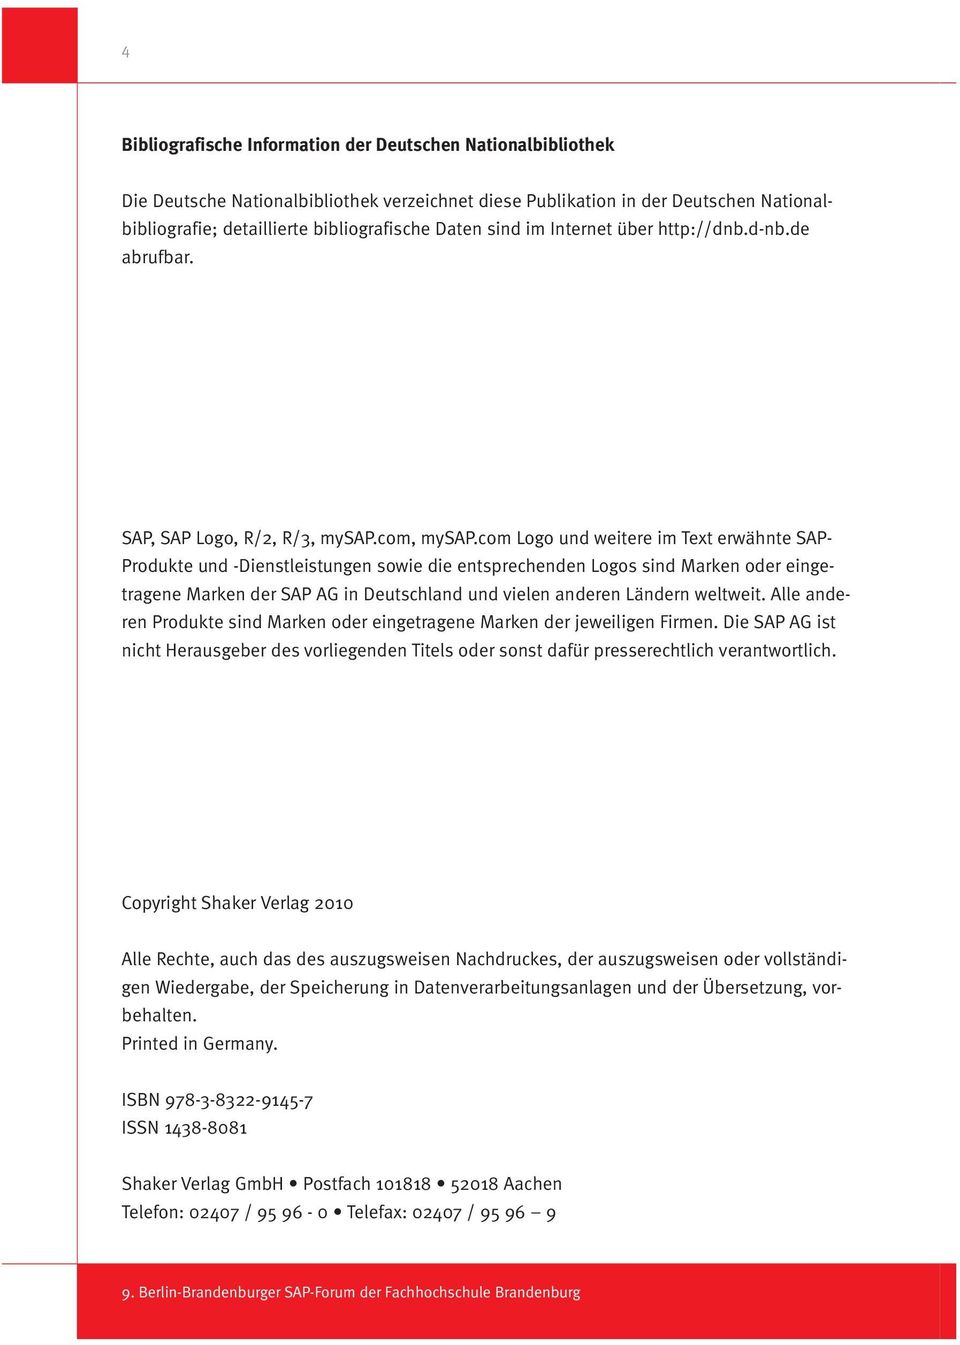 com Logo und weitere im Text erwähnte SAP- Produkte und -Dienstleistungen sowie die entsprechenden Logos sind Marken oder eingetragene Marken der SAP AG in Deutschland und vielen anderen Ländern